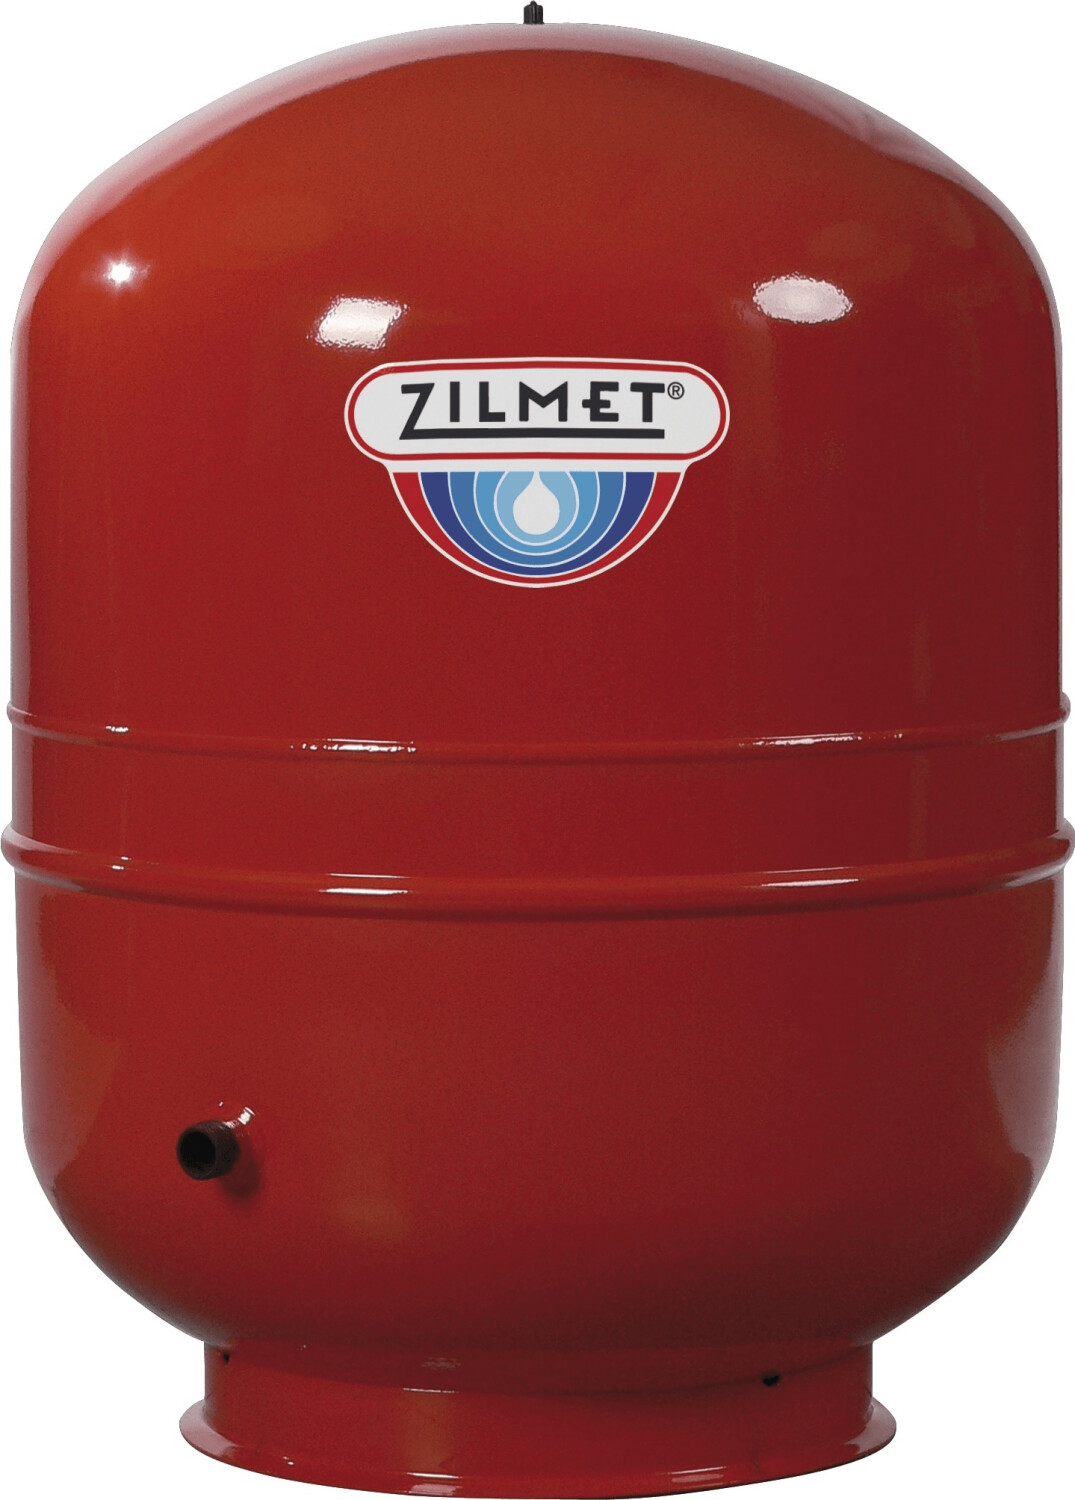 Zilmet Zilflex H 150 Liter ab 251,95 €